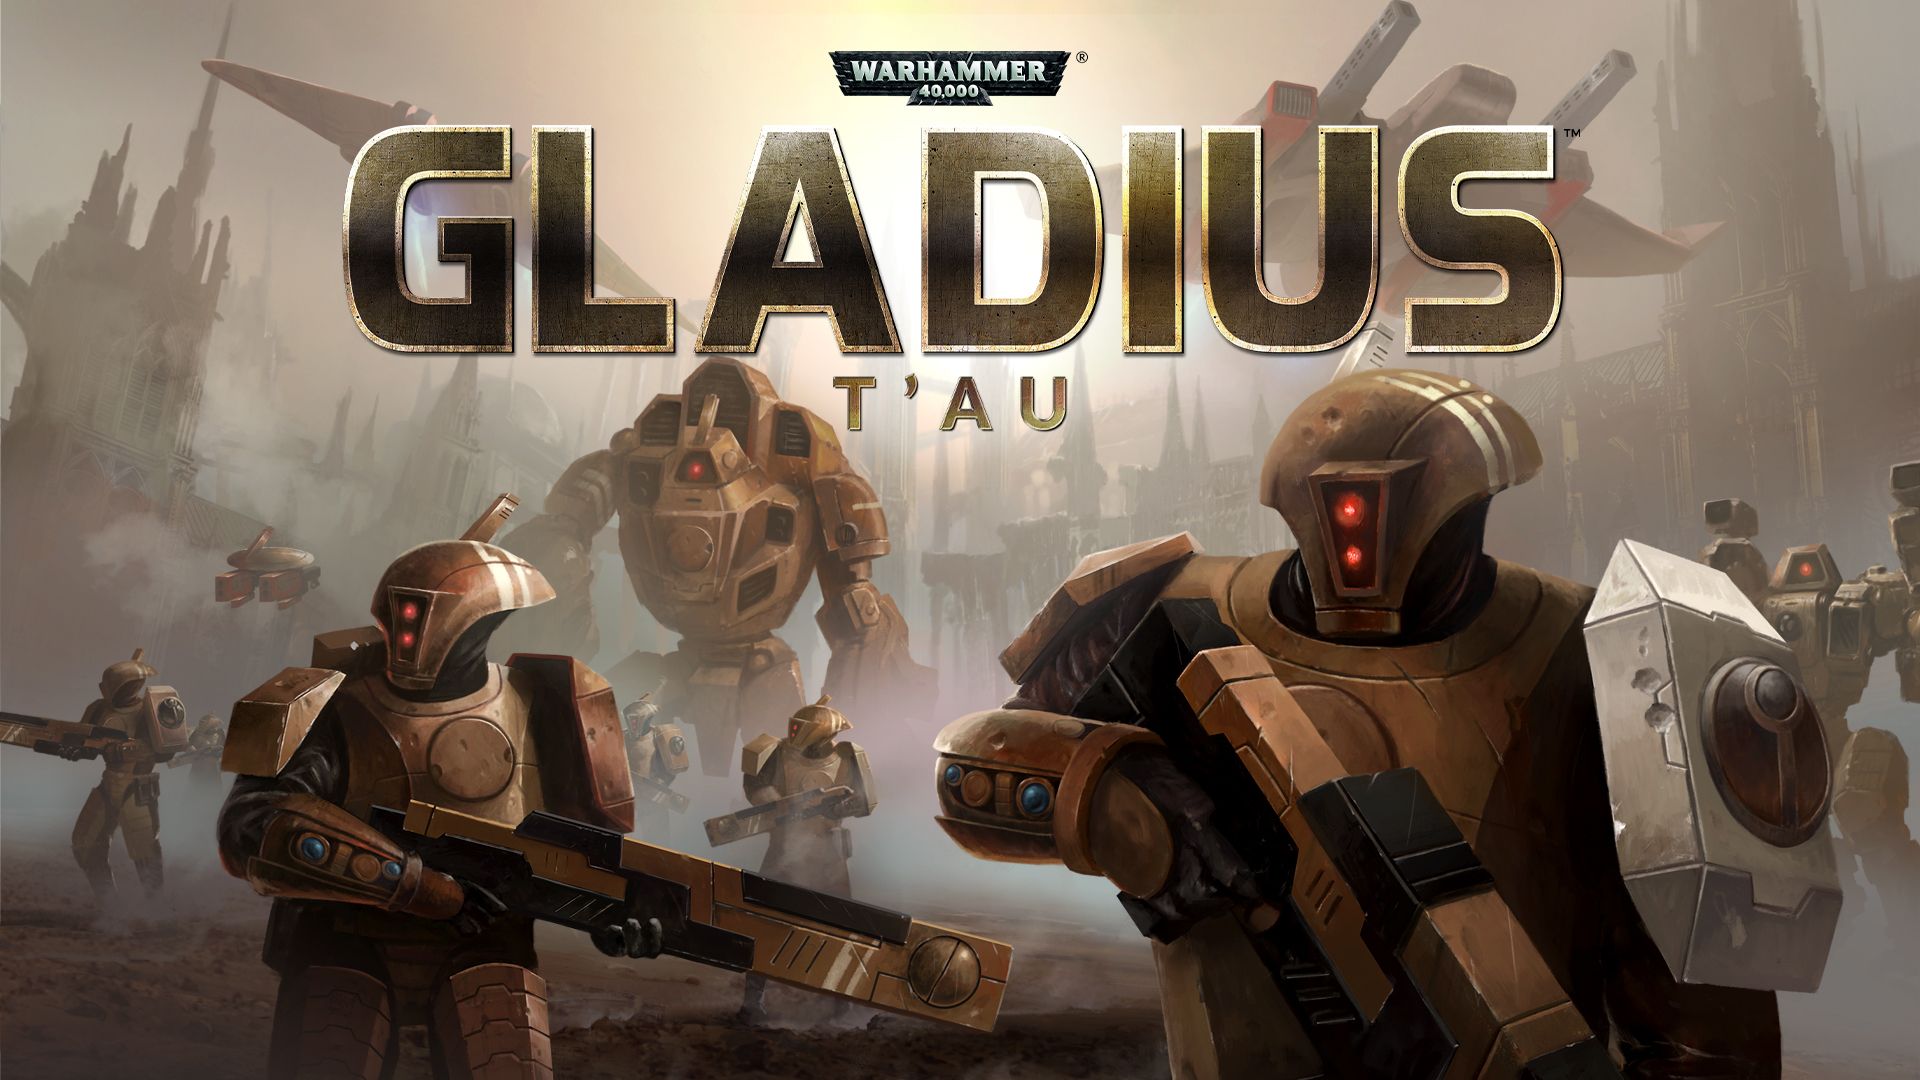 Video Game Review: Warhammer 000 Gladius